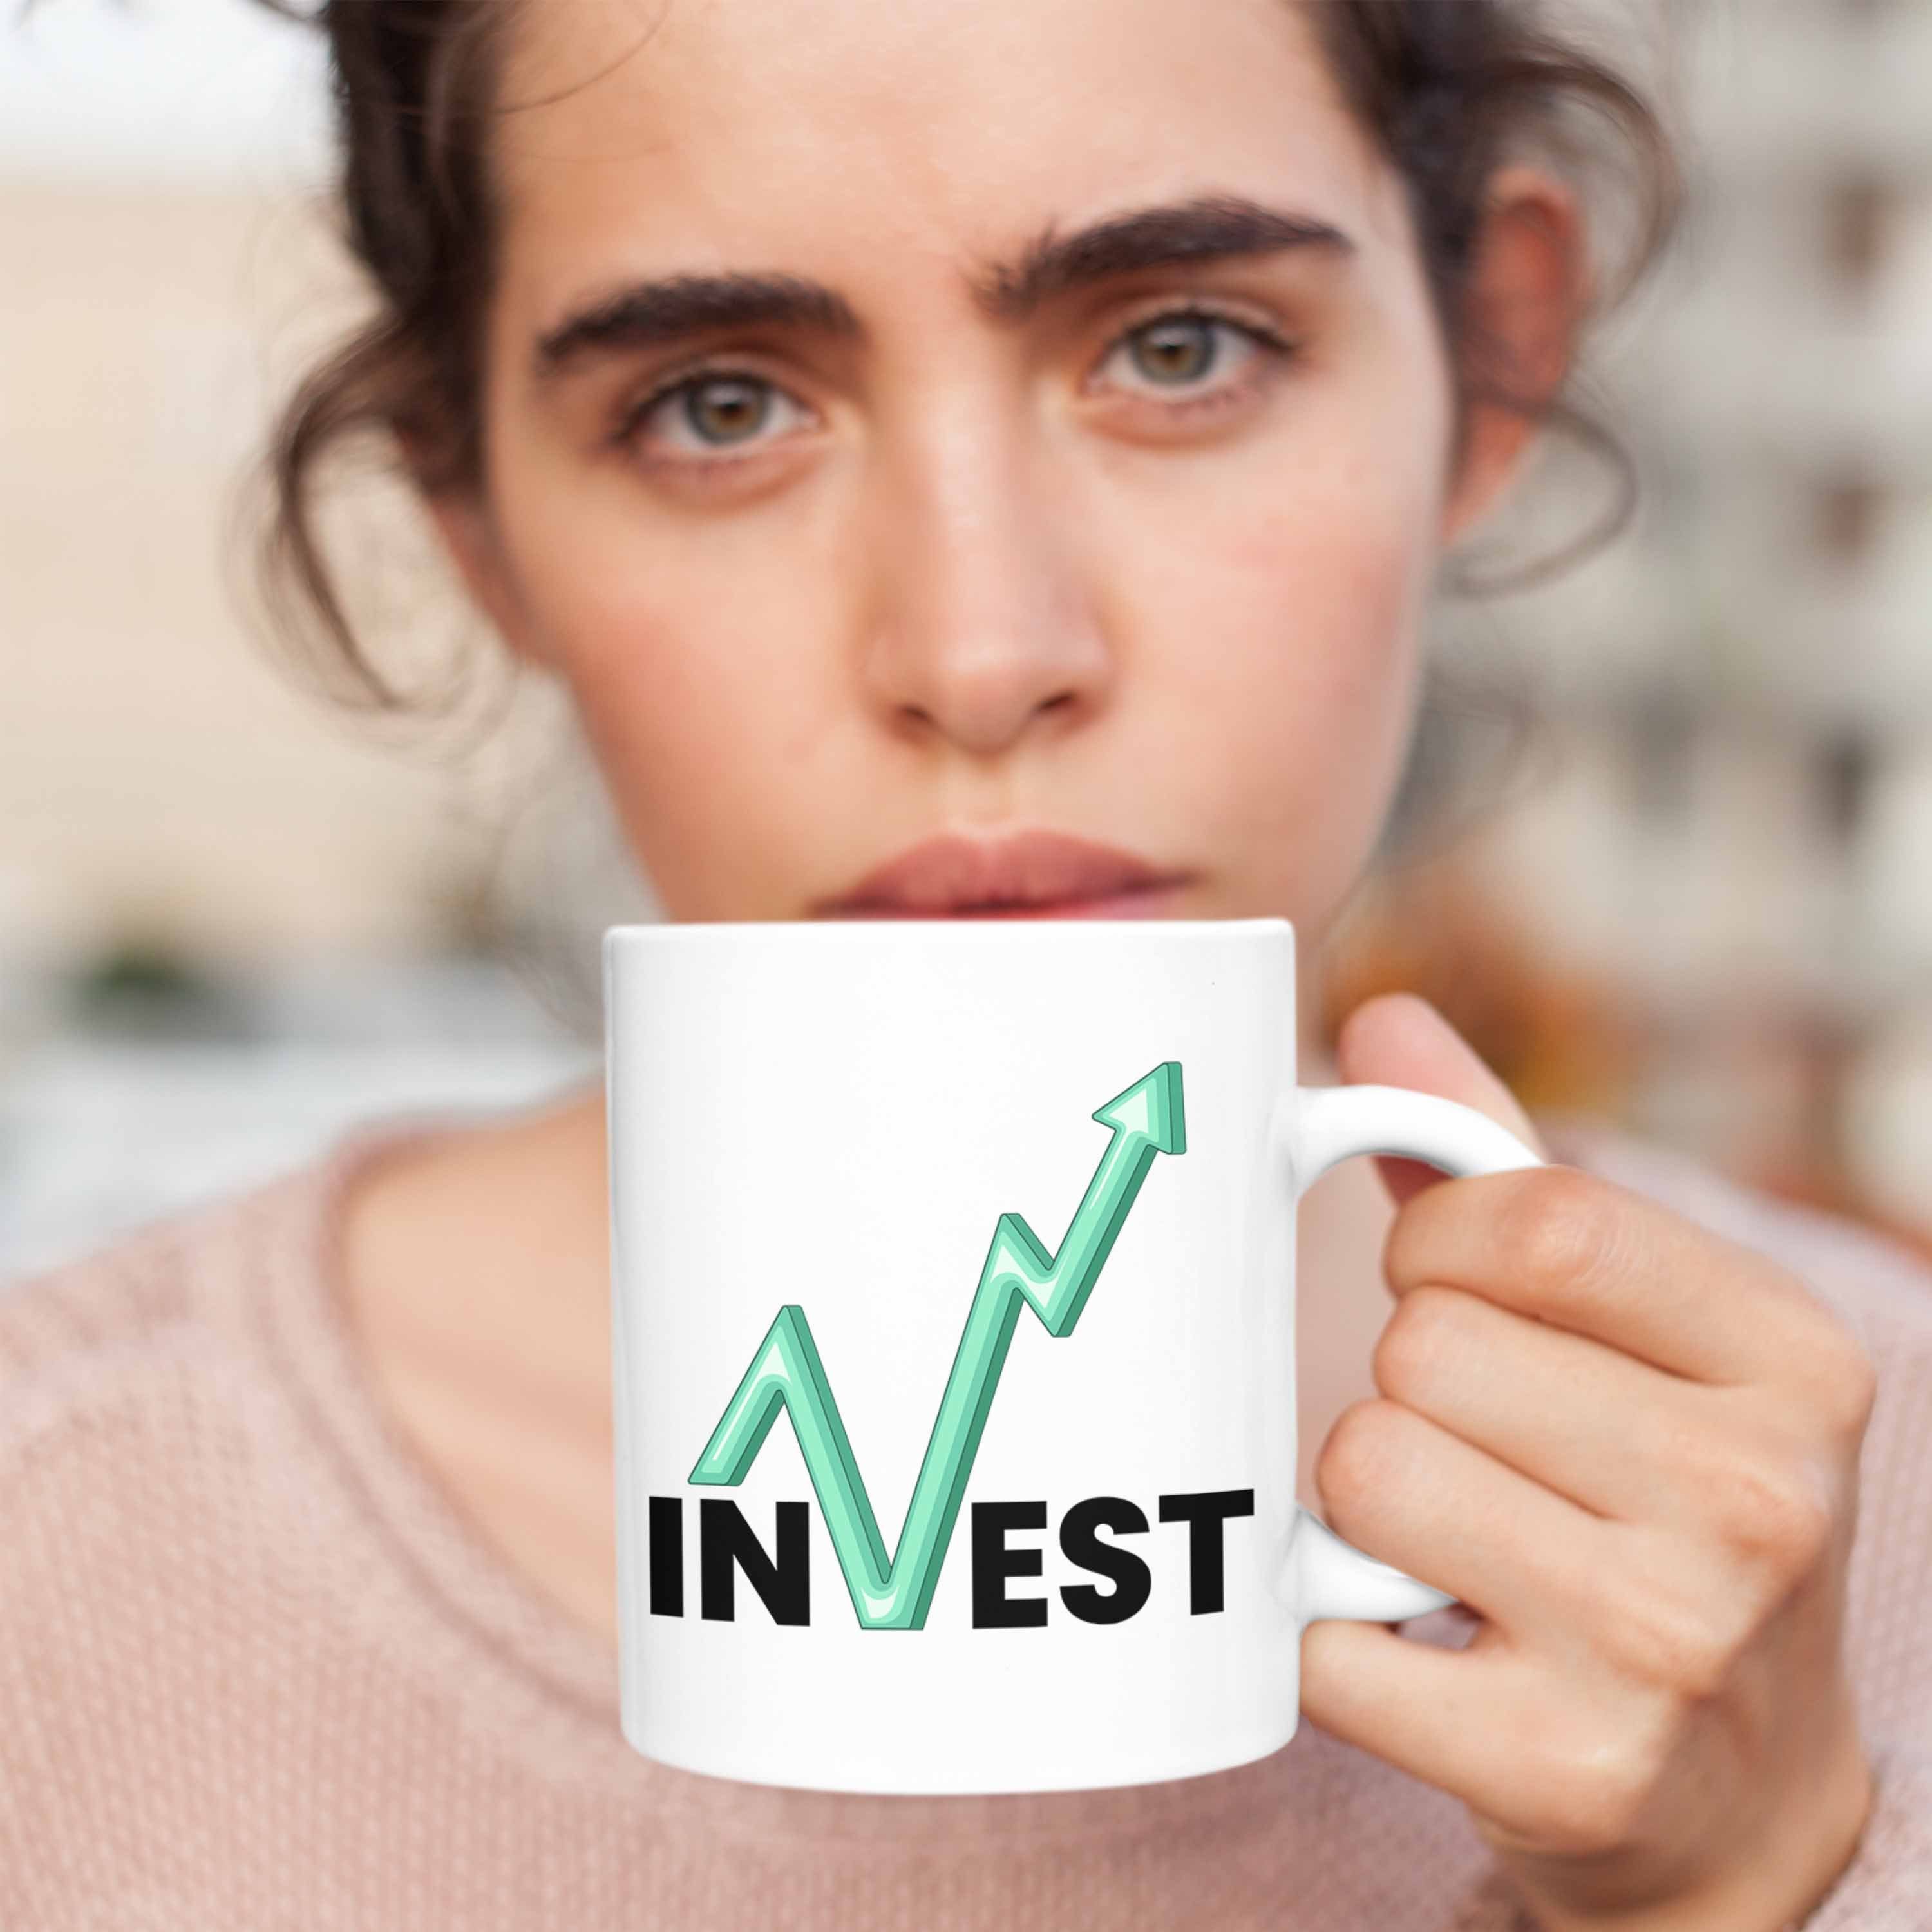 Börsenfans und Tasse Weiss Geschenk "Invest" Trader Tasse Investment Aktien für Trendation Li